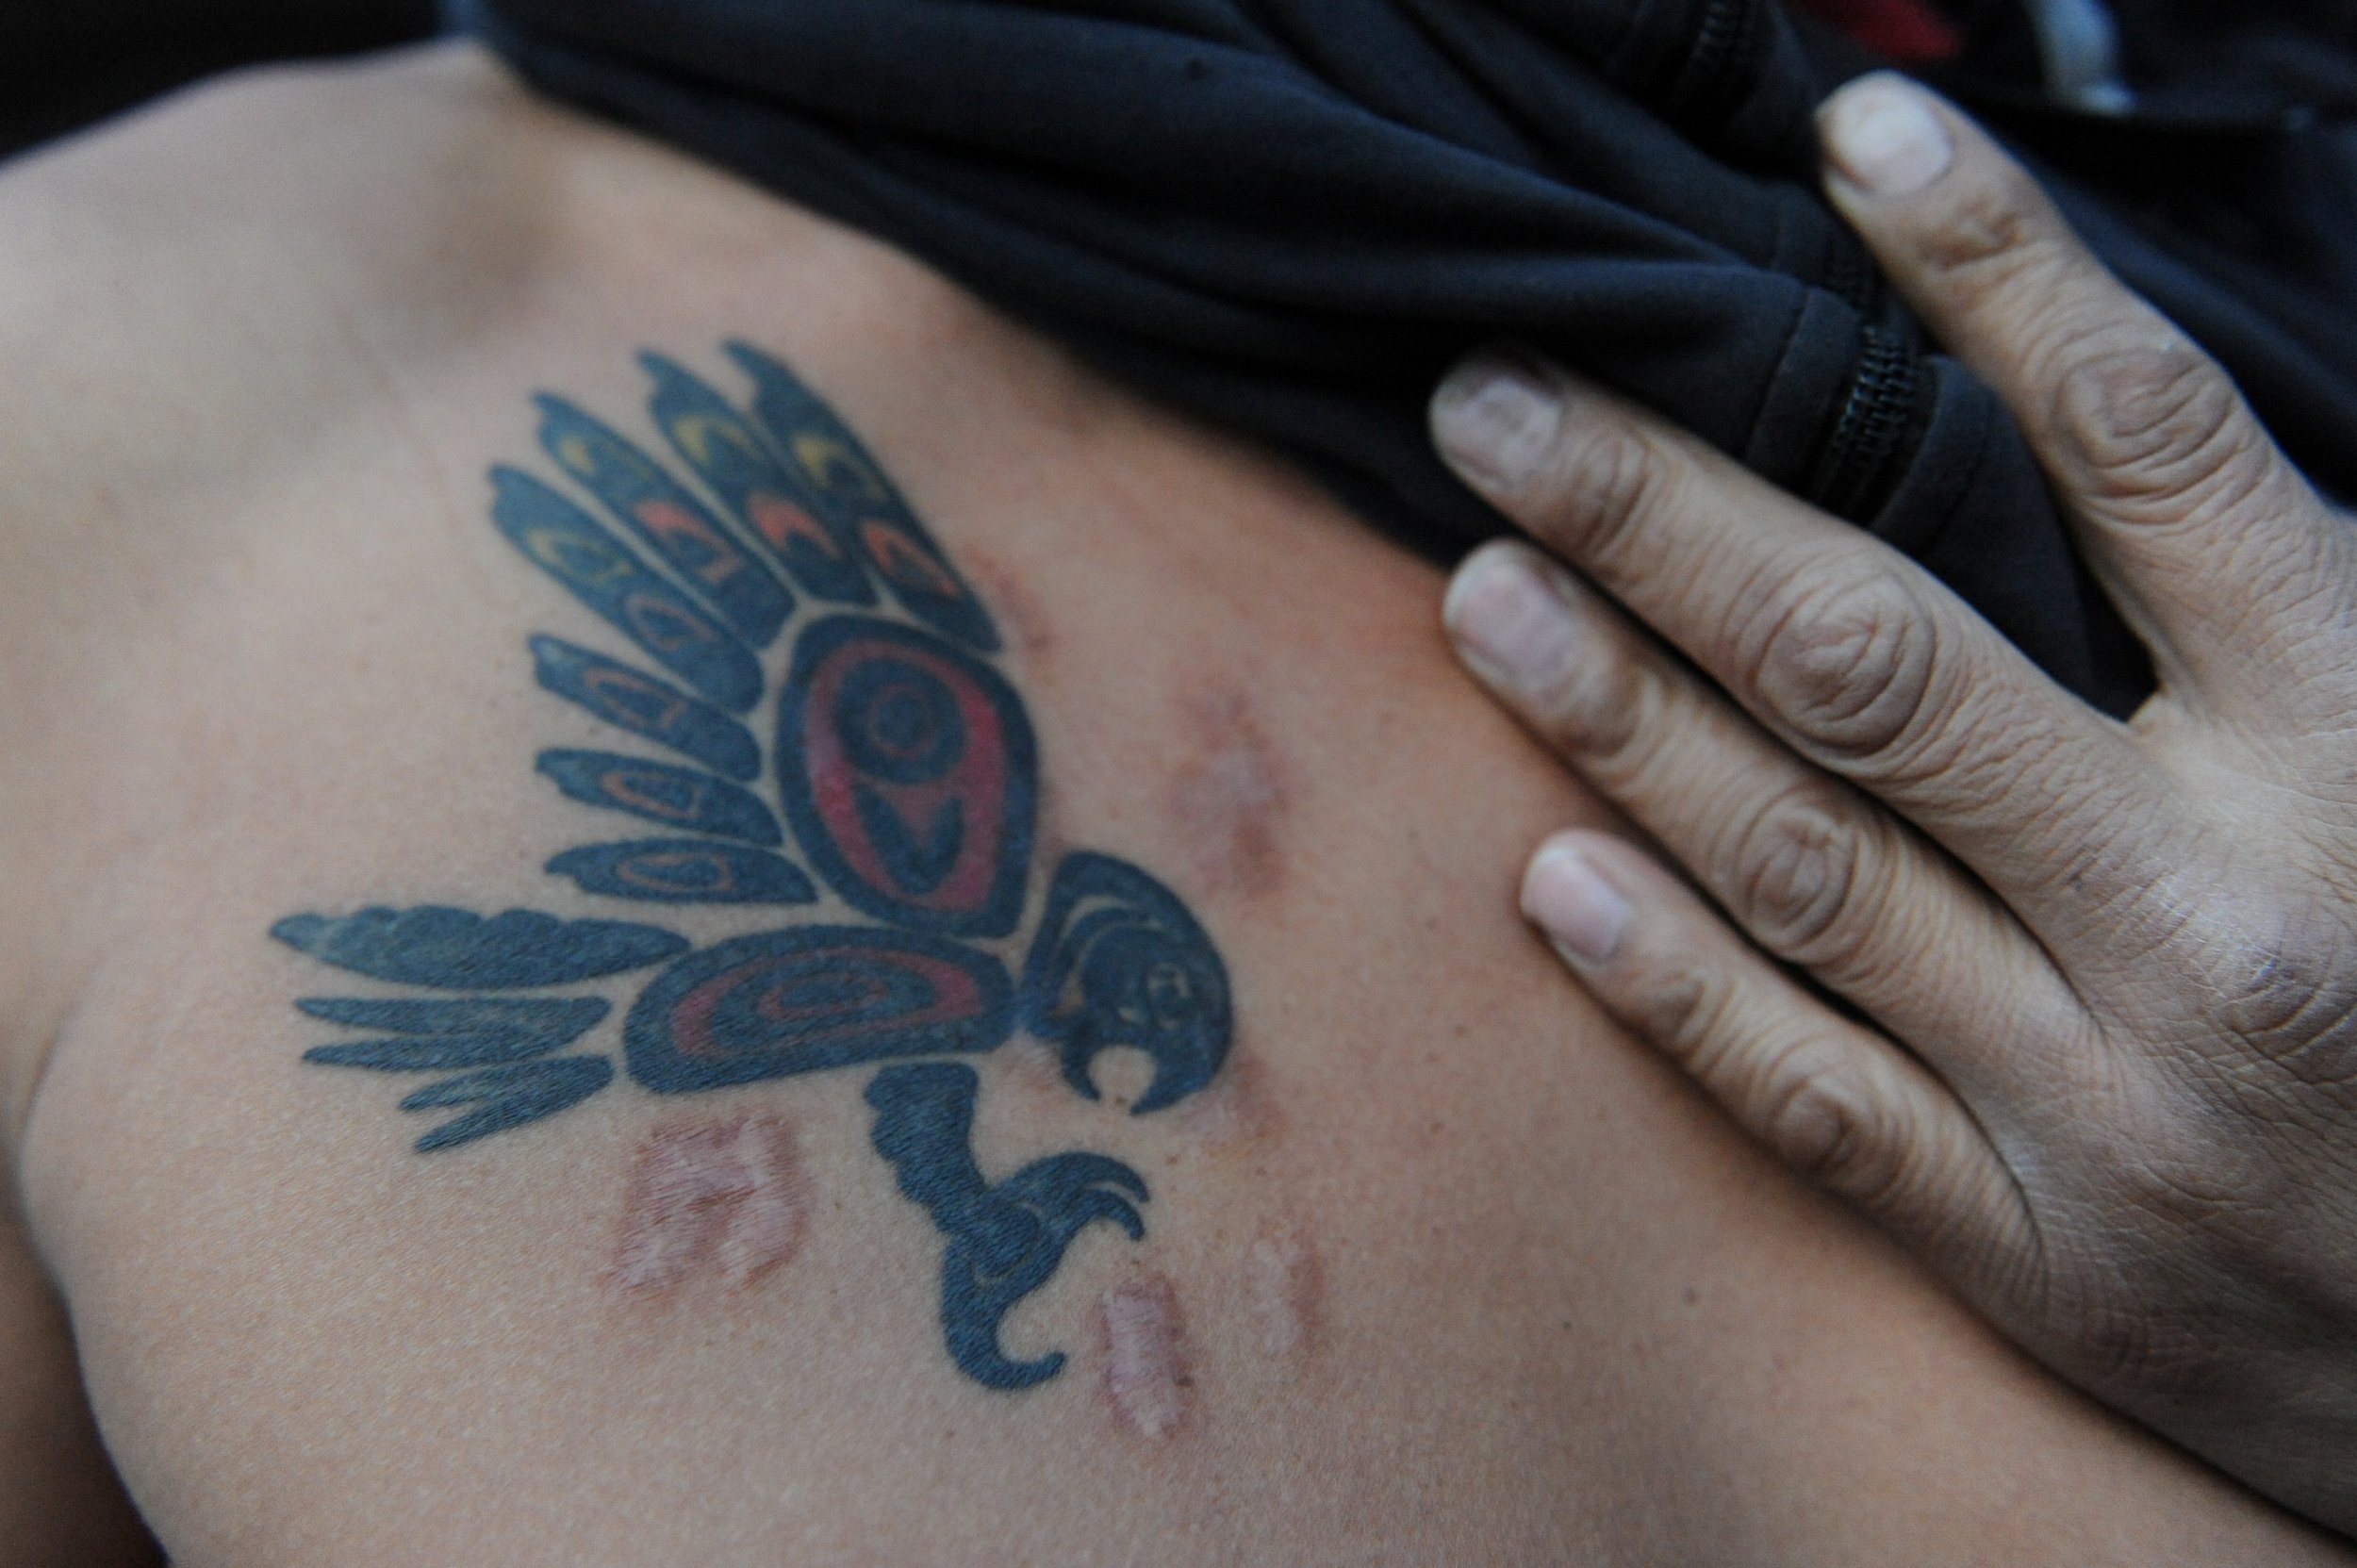 Tattoo Pics on Twitter Native American feathers arm band tattoo  httptcowKijcsL6bD  Twitter